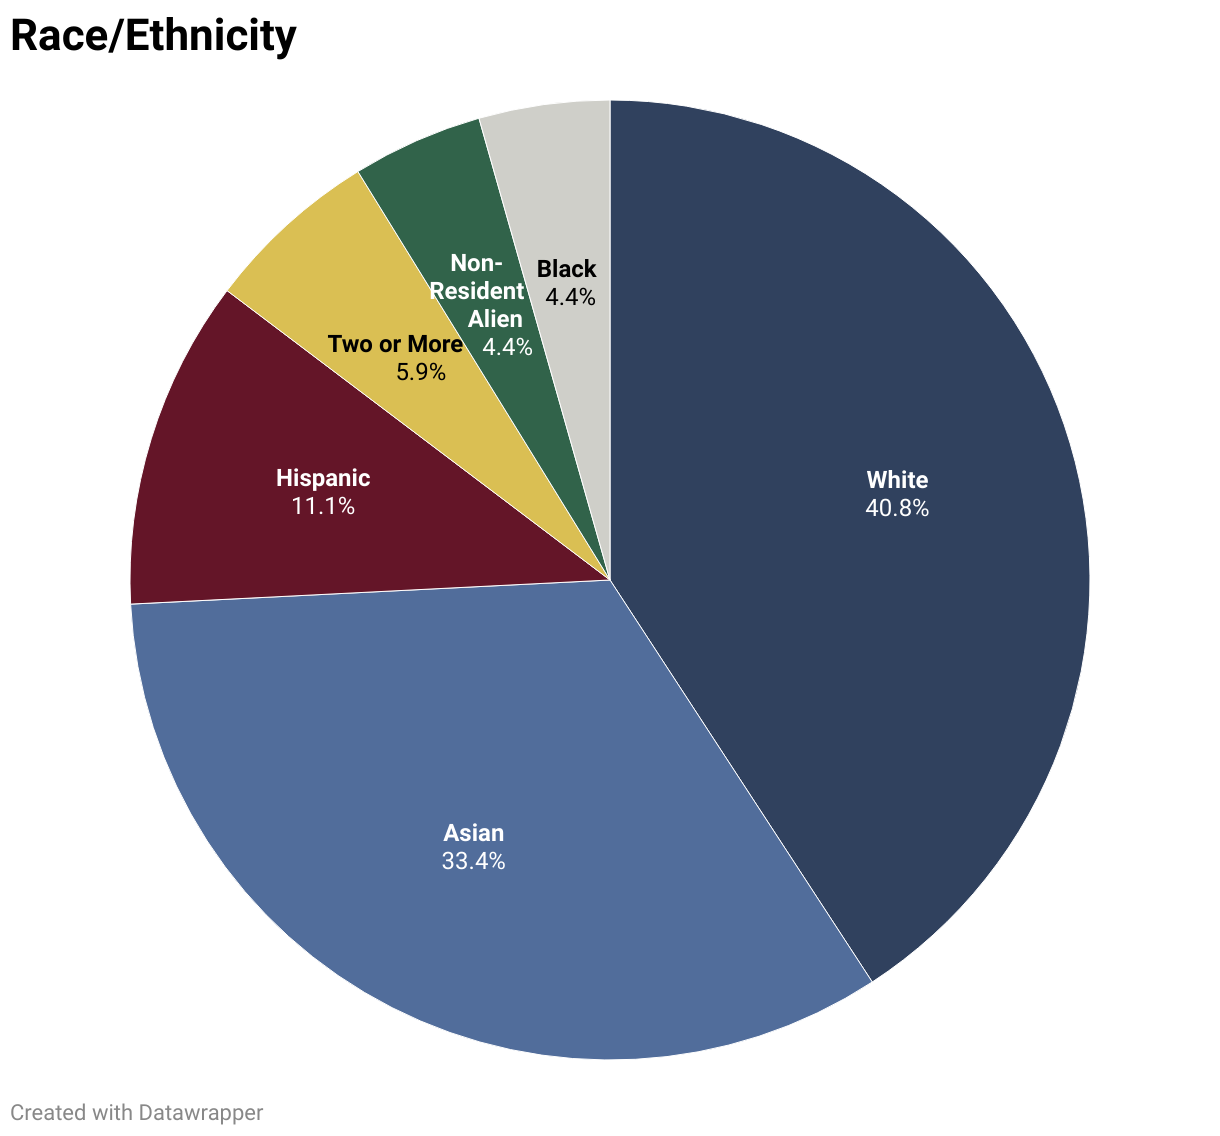 White:40.8%Asian:33.4%Hispanic:11.1%Two or More:5.9%;Non-Resident Alien:4.4%Black:4.4%